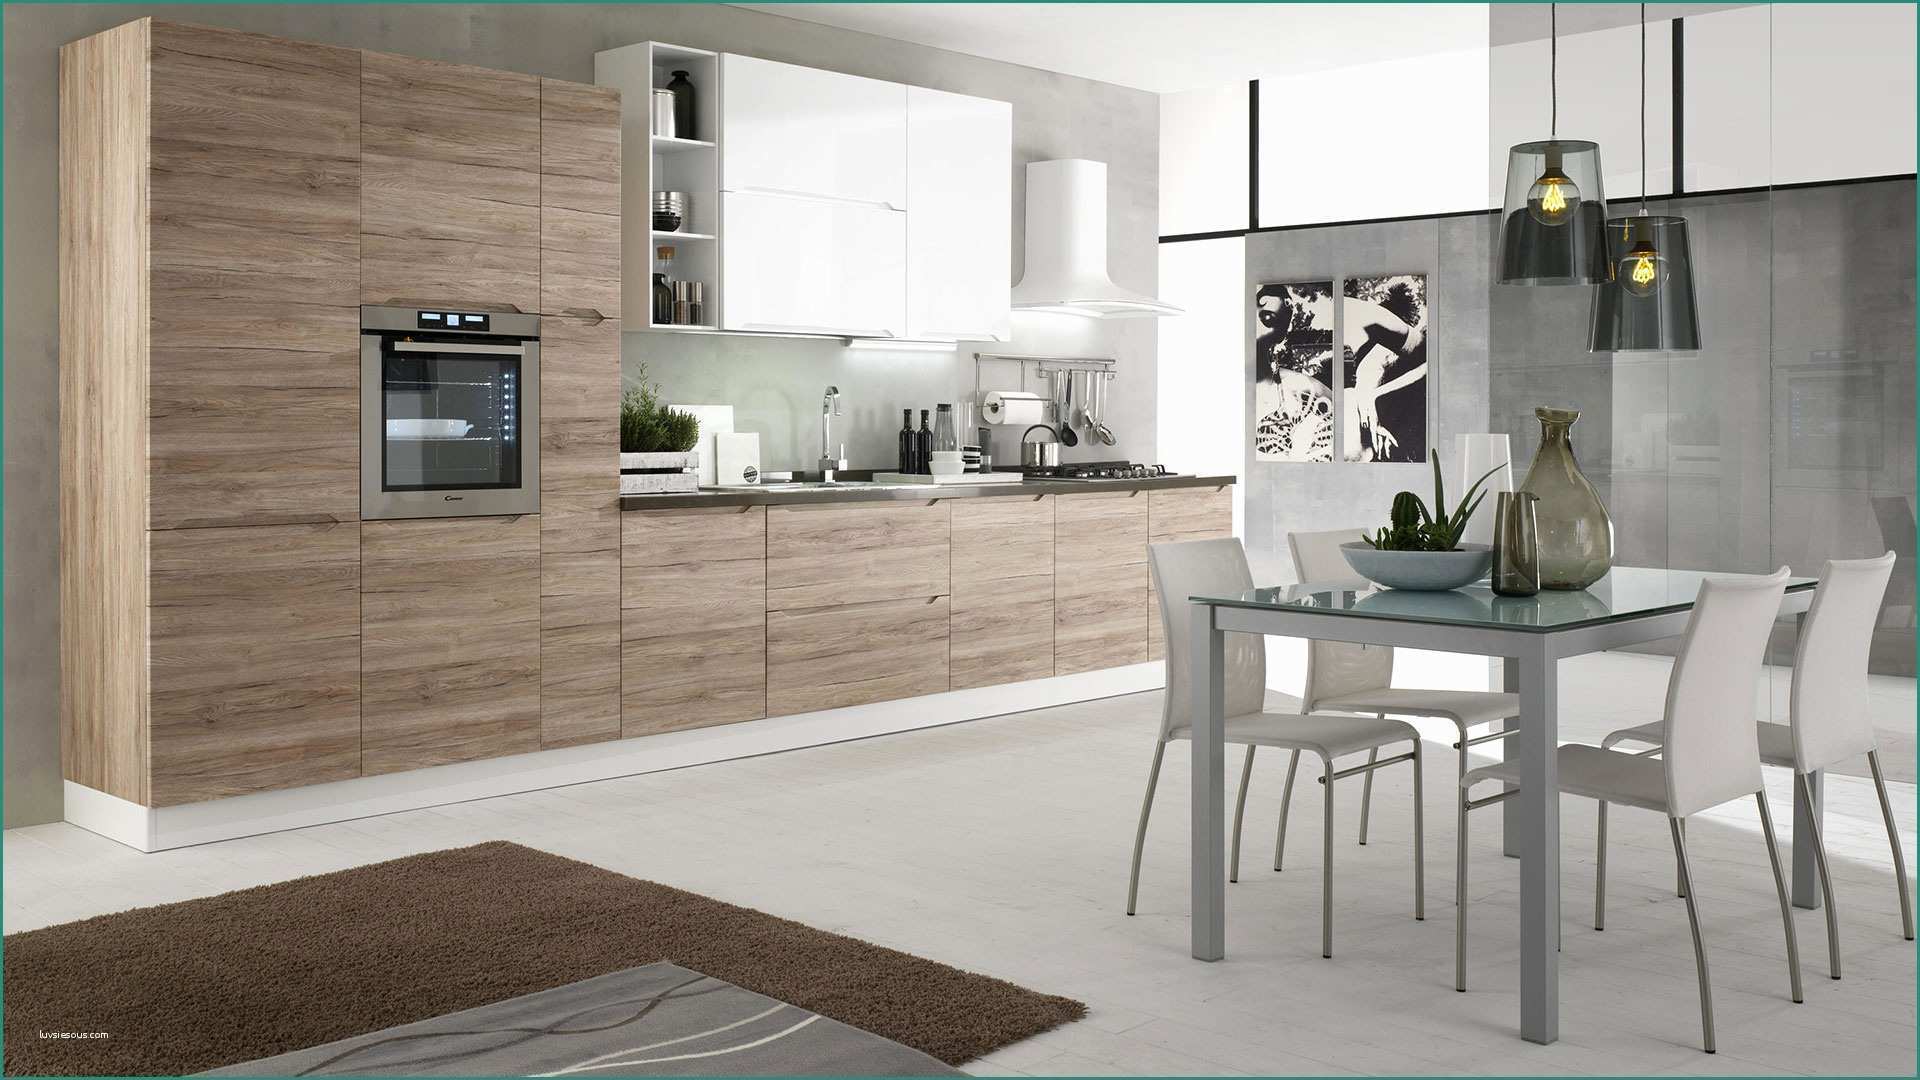 Cucina Legno Bianco E Immagini Di Cucine Moderne Excellent soggiorno Open Space soggiorno